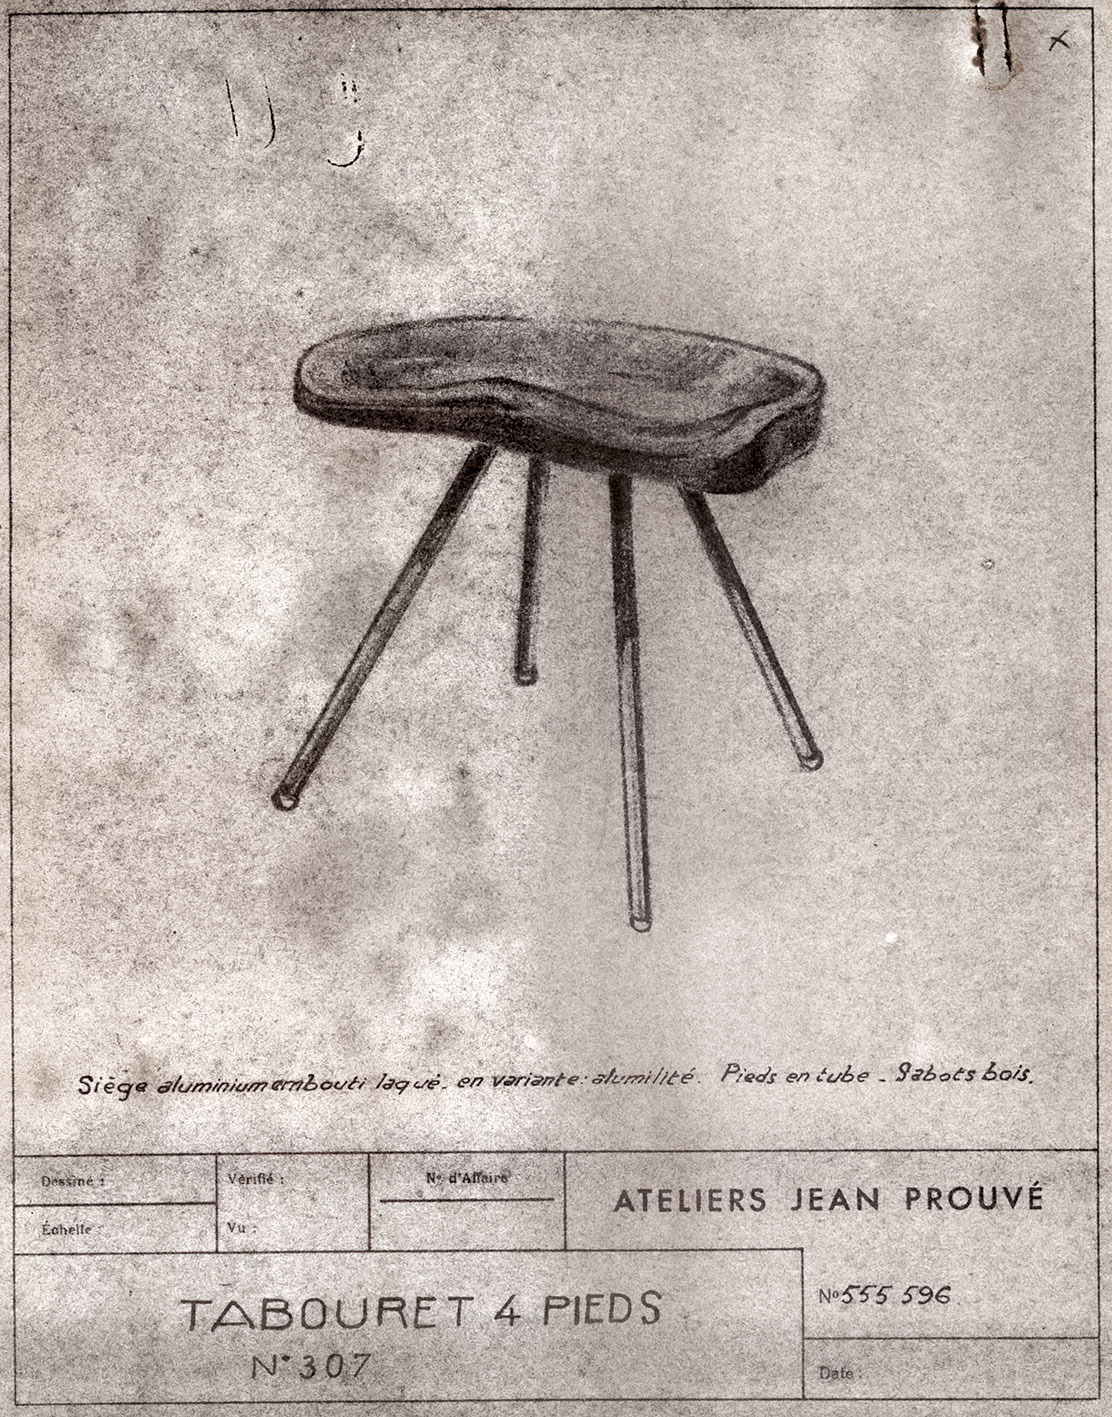 « Tabouret 4 pieds n° 307 ». Fiche descriptive Ateliers Jean Prouvé n° 555.596, c. 1952.